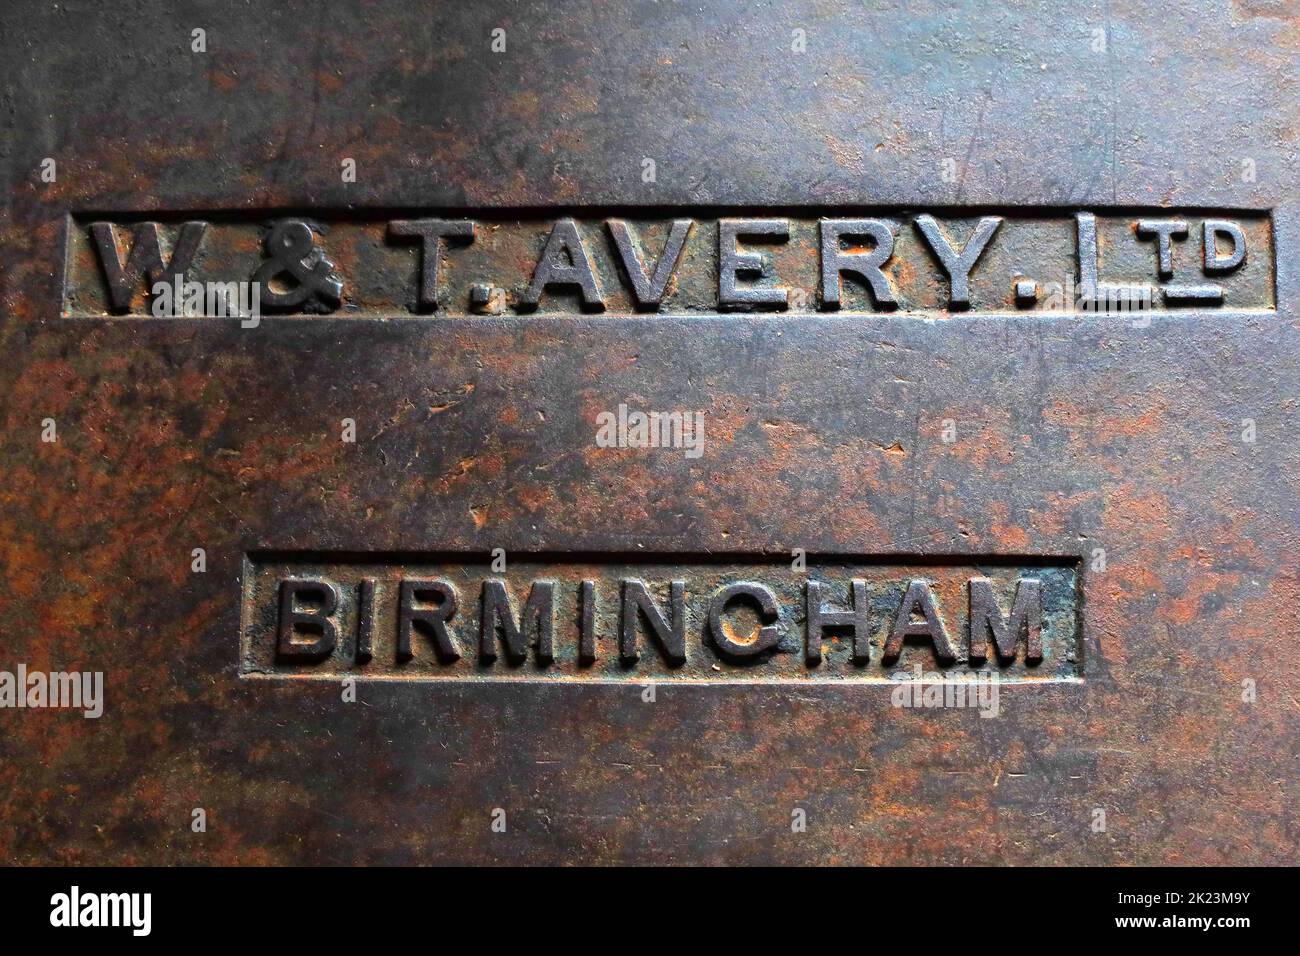 WT Avery Ltd, Birmingham - weighing machine Stock Photo